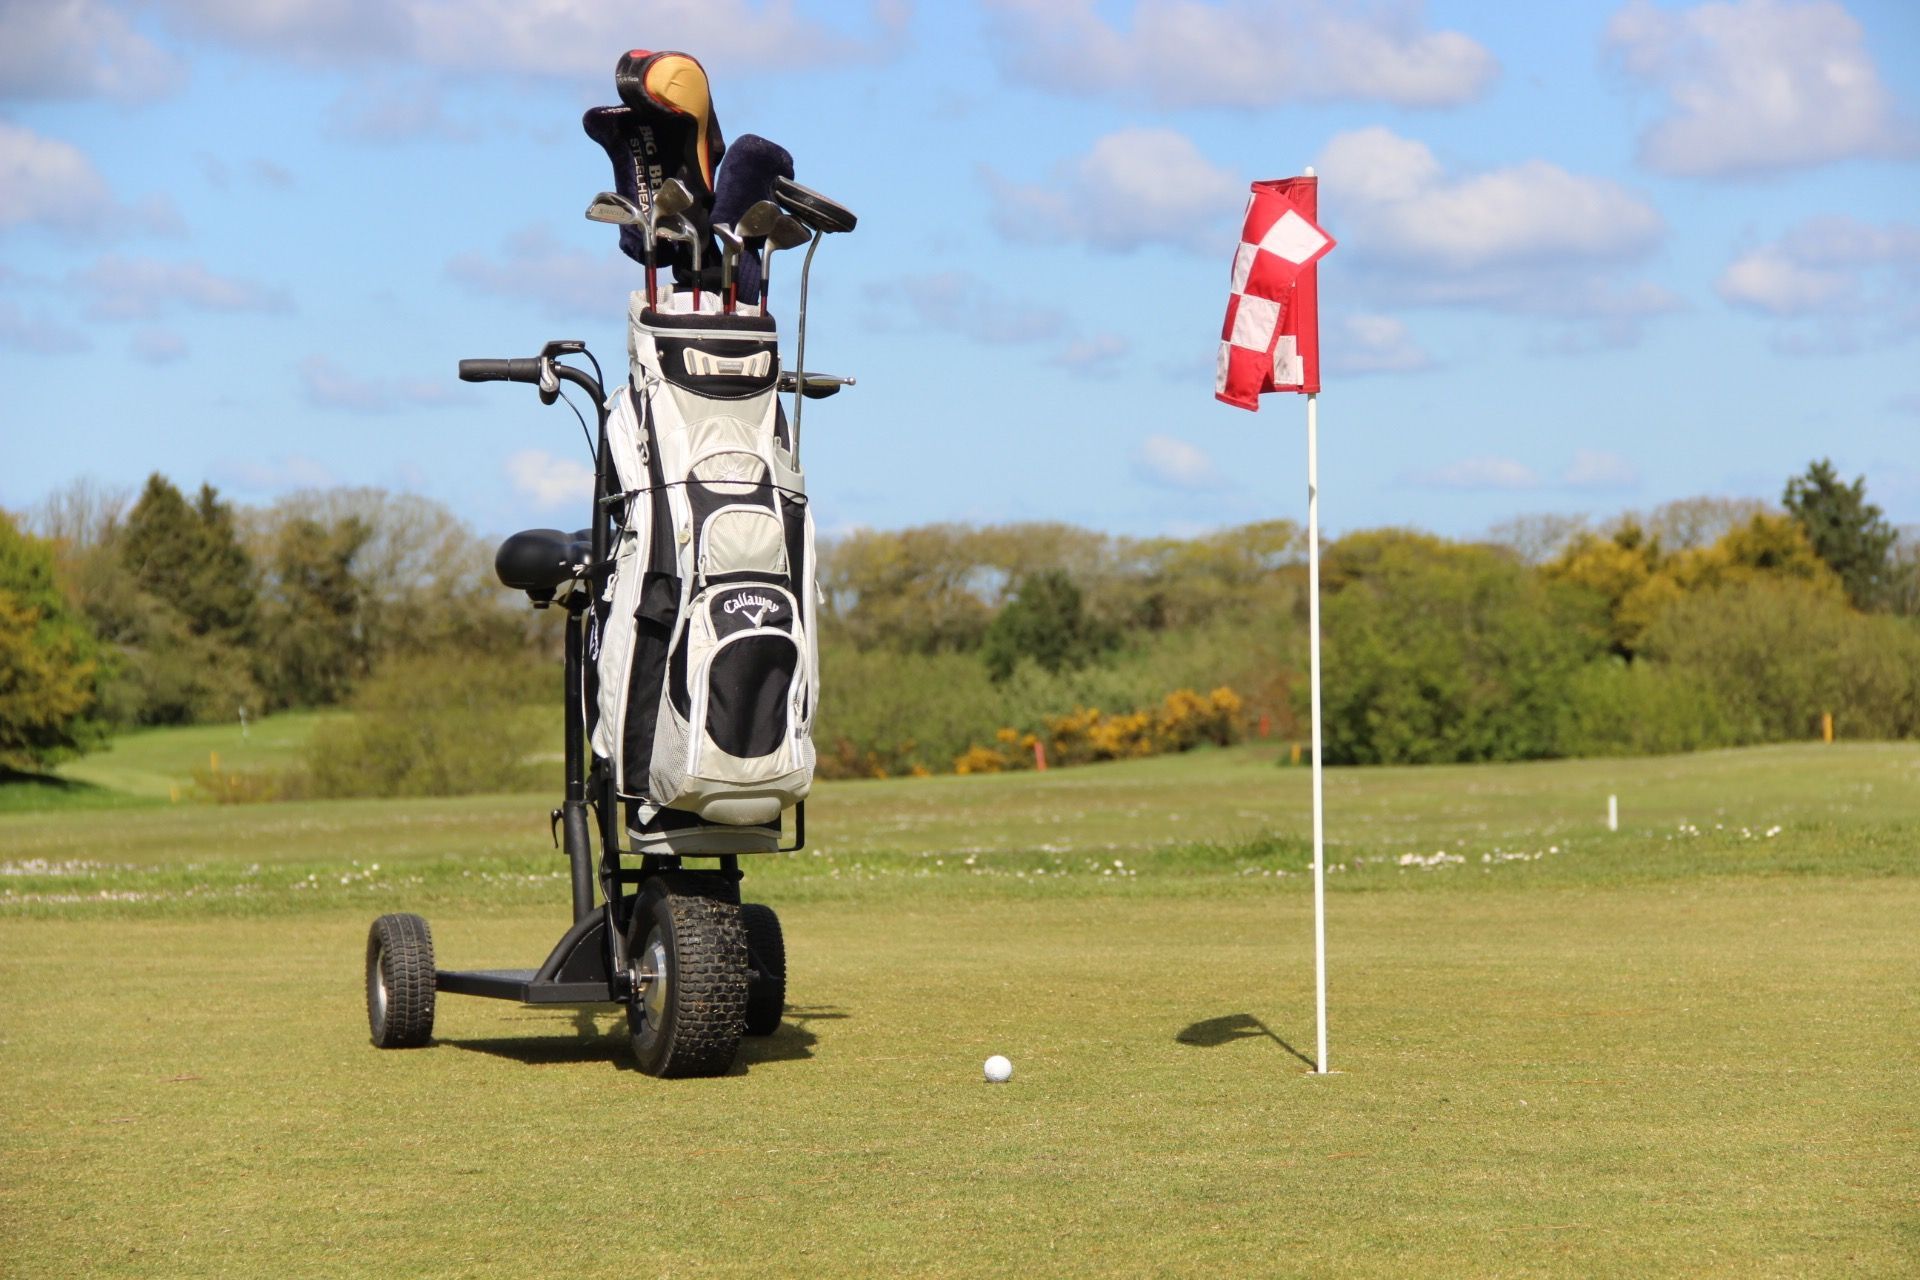 Trottinette électrique pour parcours de golf. Conception française, confortable et stable, avec support pour équipement de golf